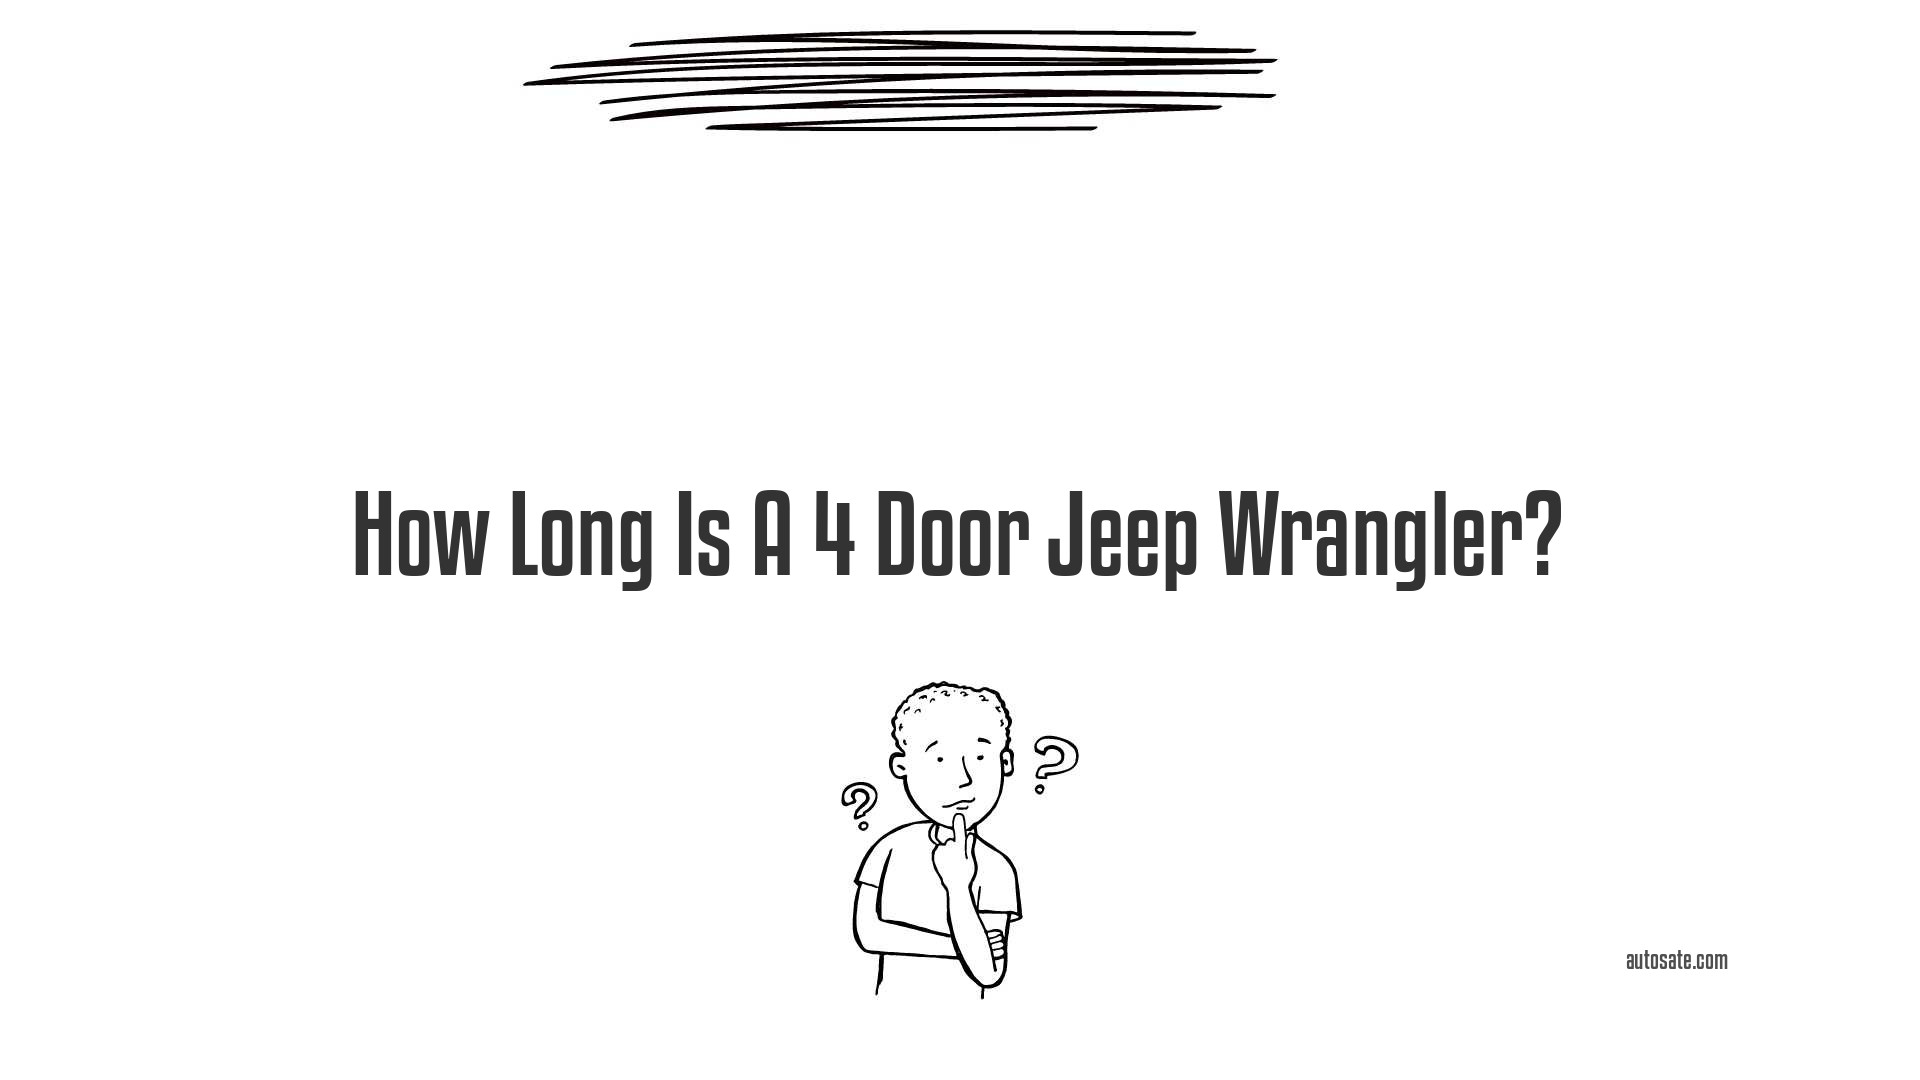 How Long Is A 4 Door Jeep Wrangler?